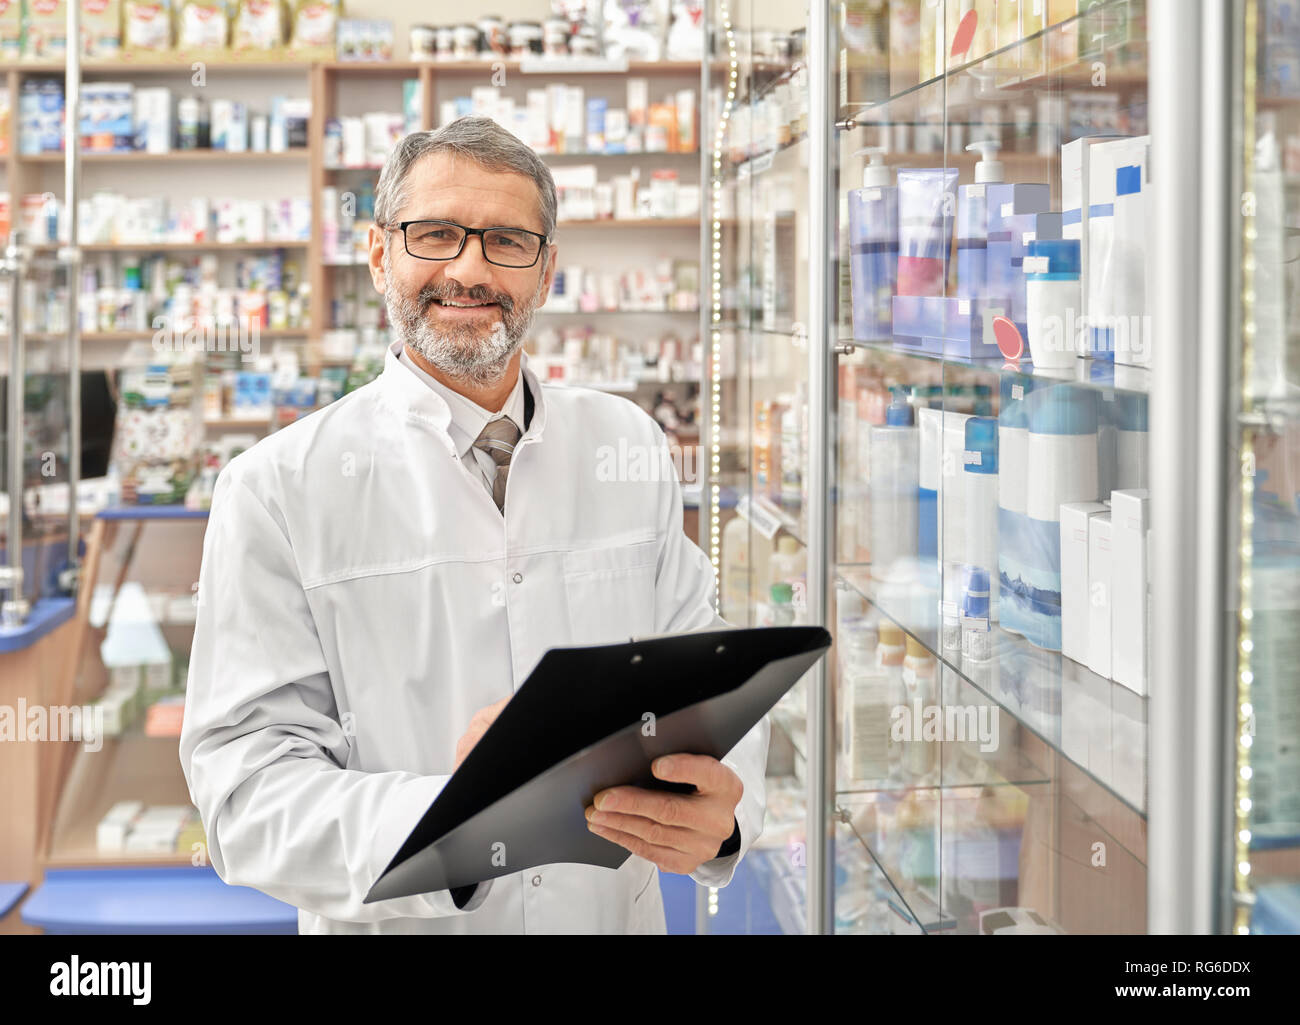 Young man smiling, pose, debout près des étagères de pharmacie avec des médicaments du dossier. Beau pharmacien barbu avec les cheveux gris vêtu de blanc sarrau et lunettes. Banque D'Images